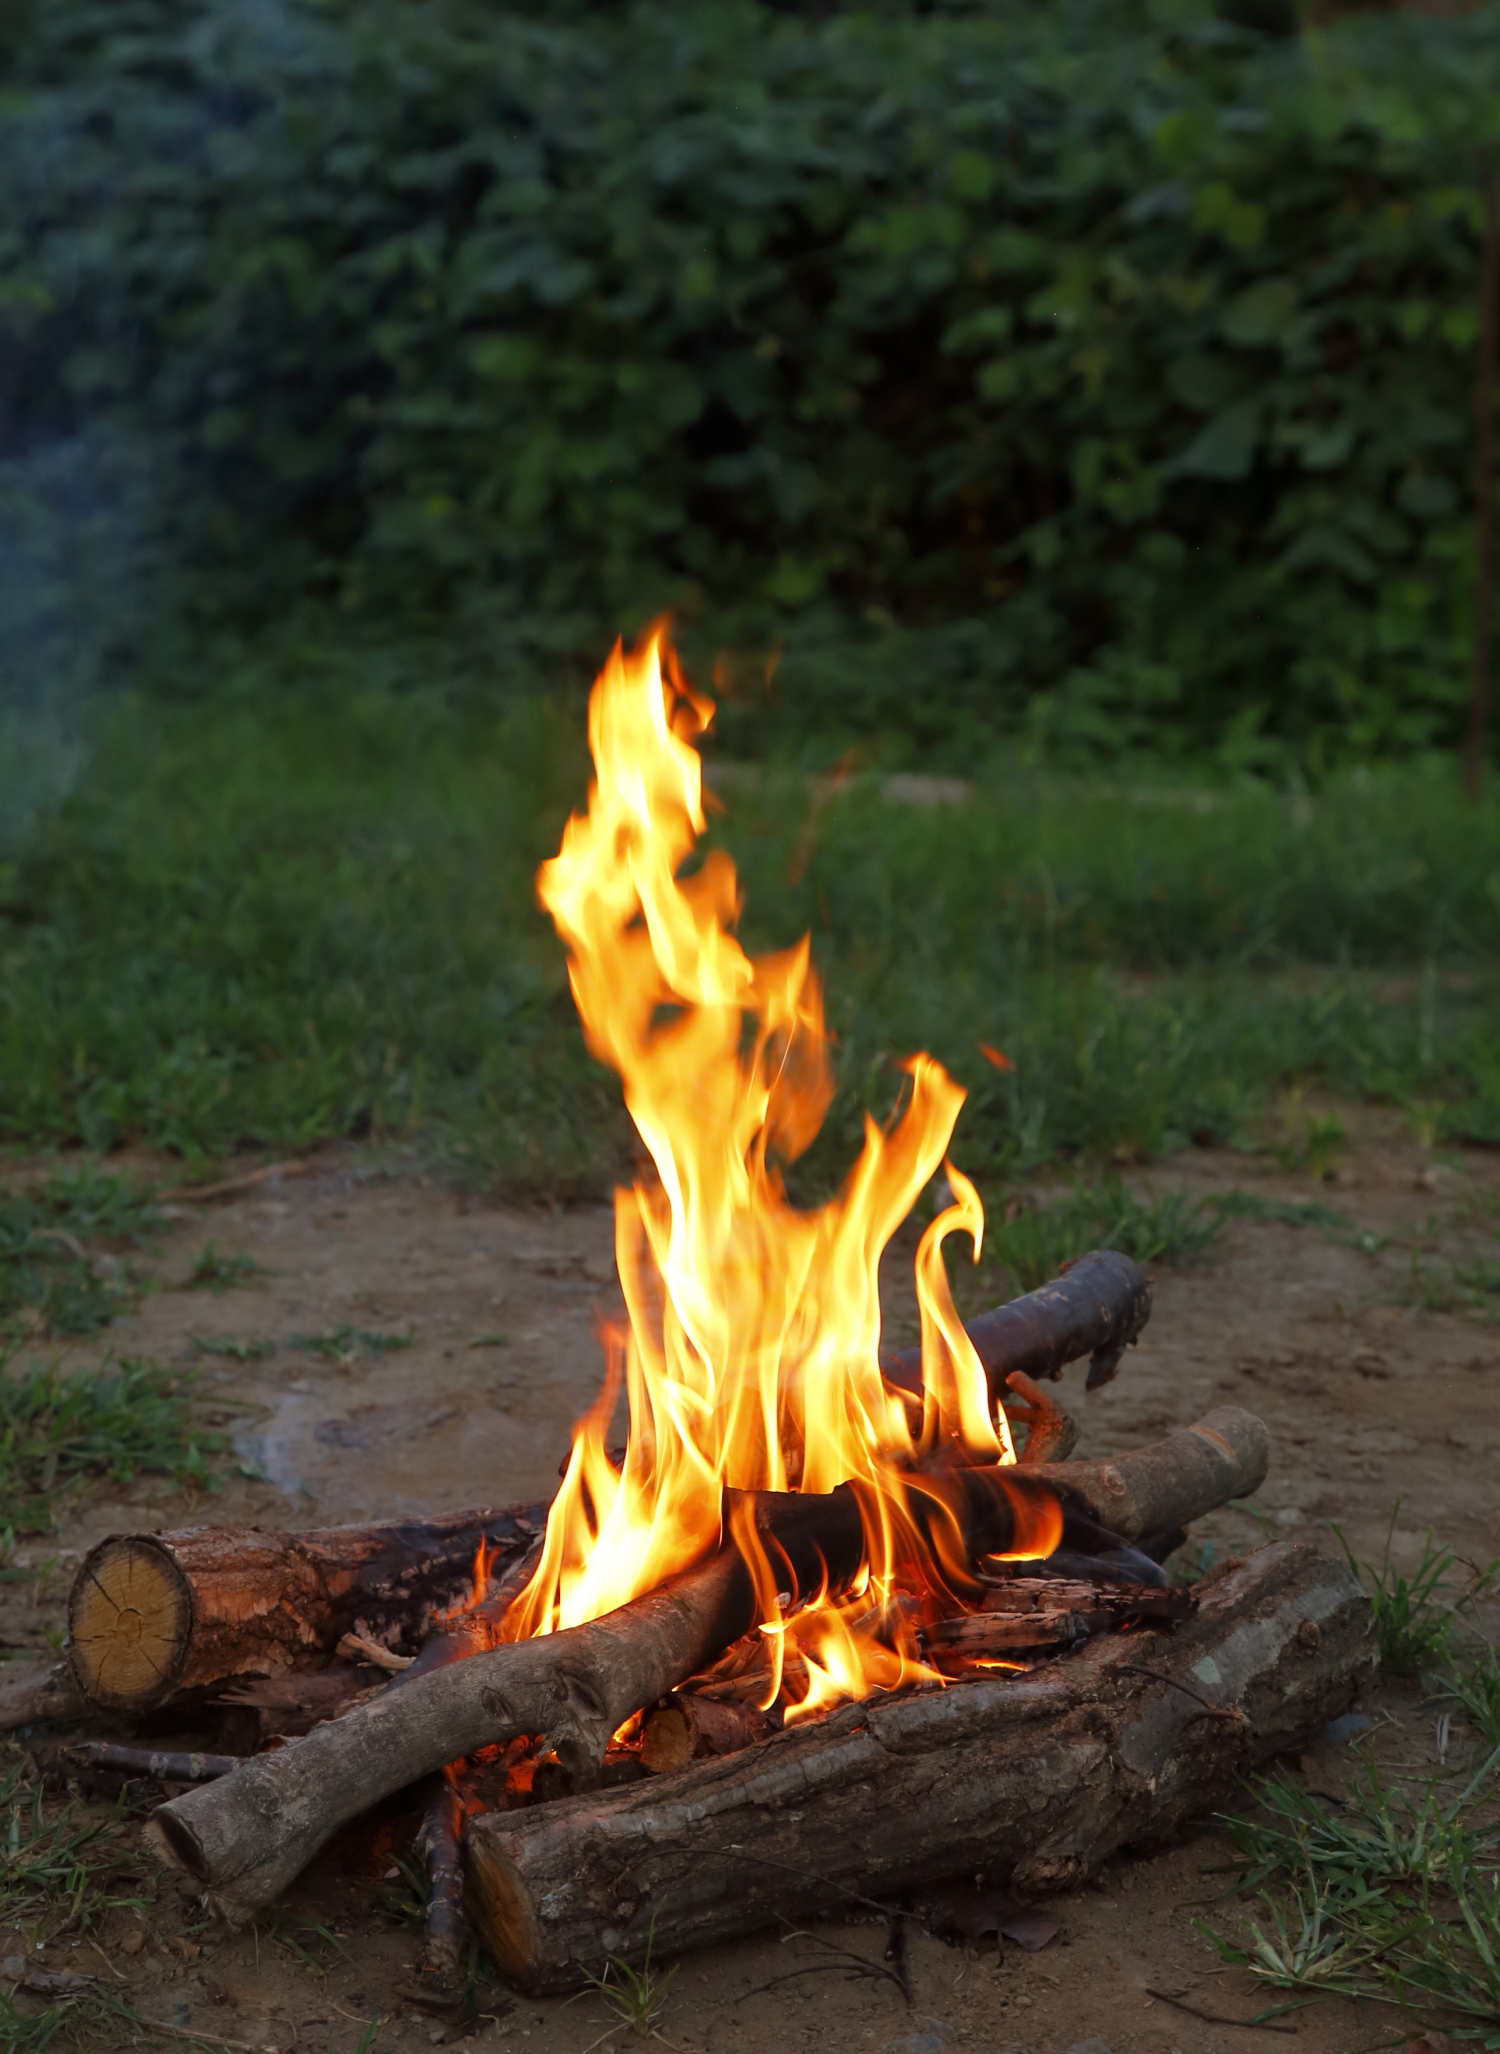 薪の組み方から火起こし 料理まで 簡単な焚き火のやり方とは 焚き火のコツ Be Pal キャンプ アウトドア 自然派生活の情報源ビーパル